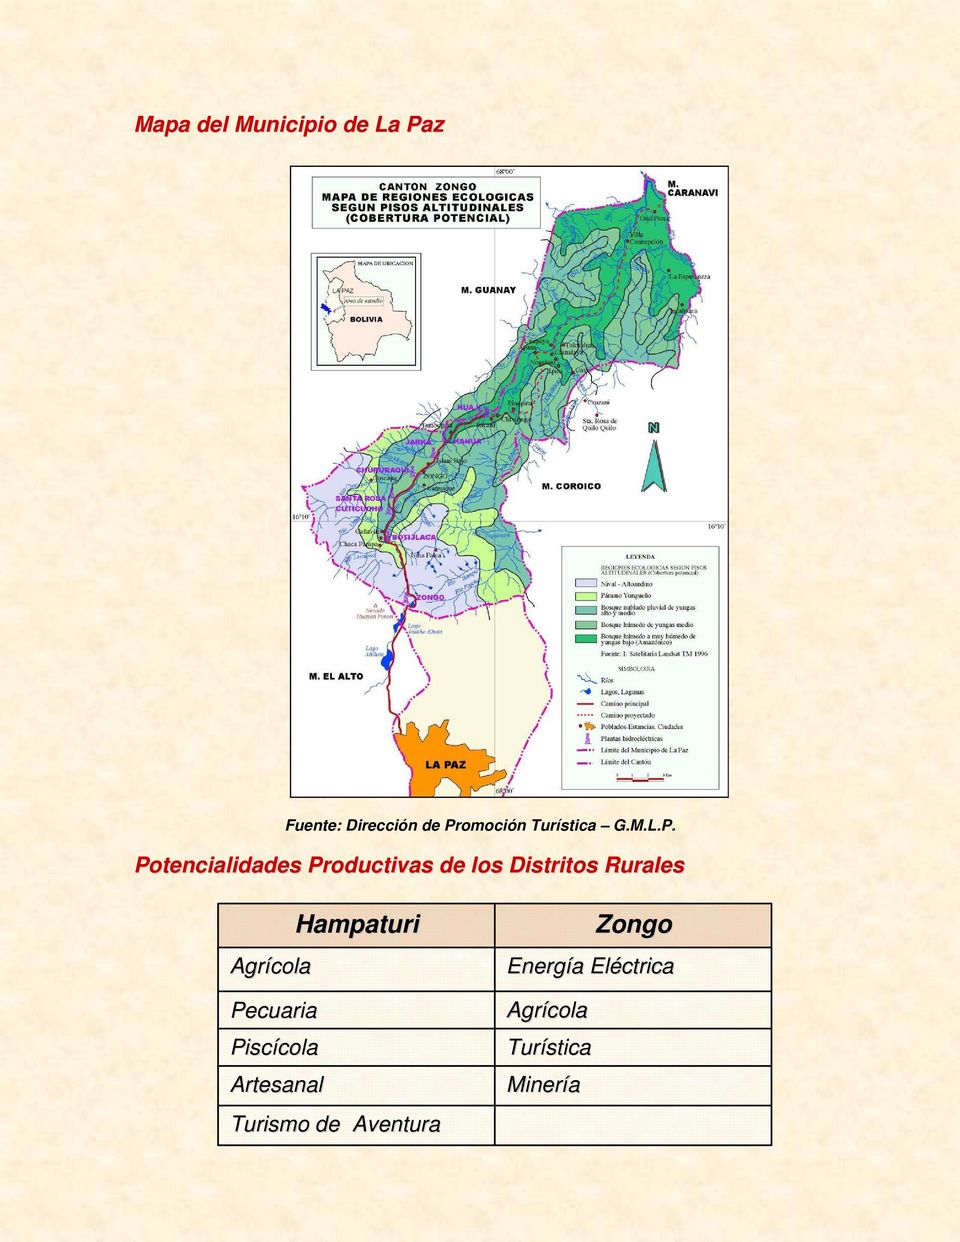 Potencialidades Productivas de los Distritos Rurales Hampaturi